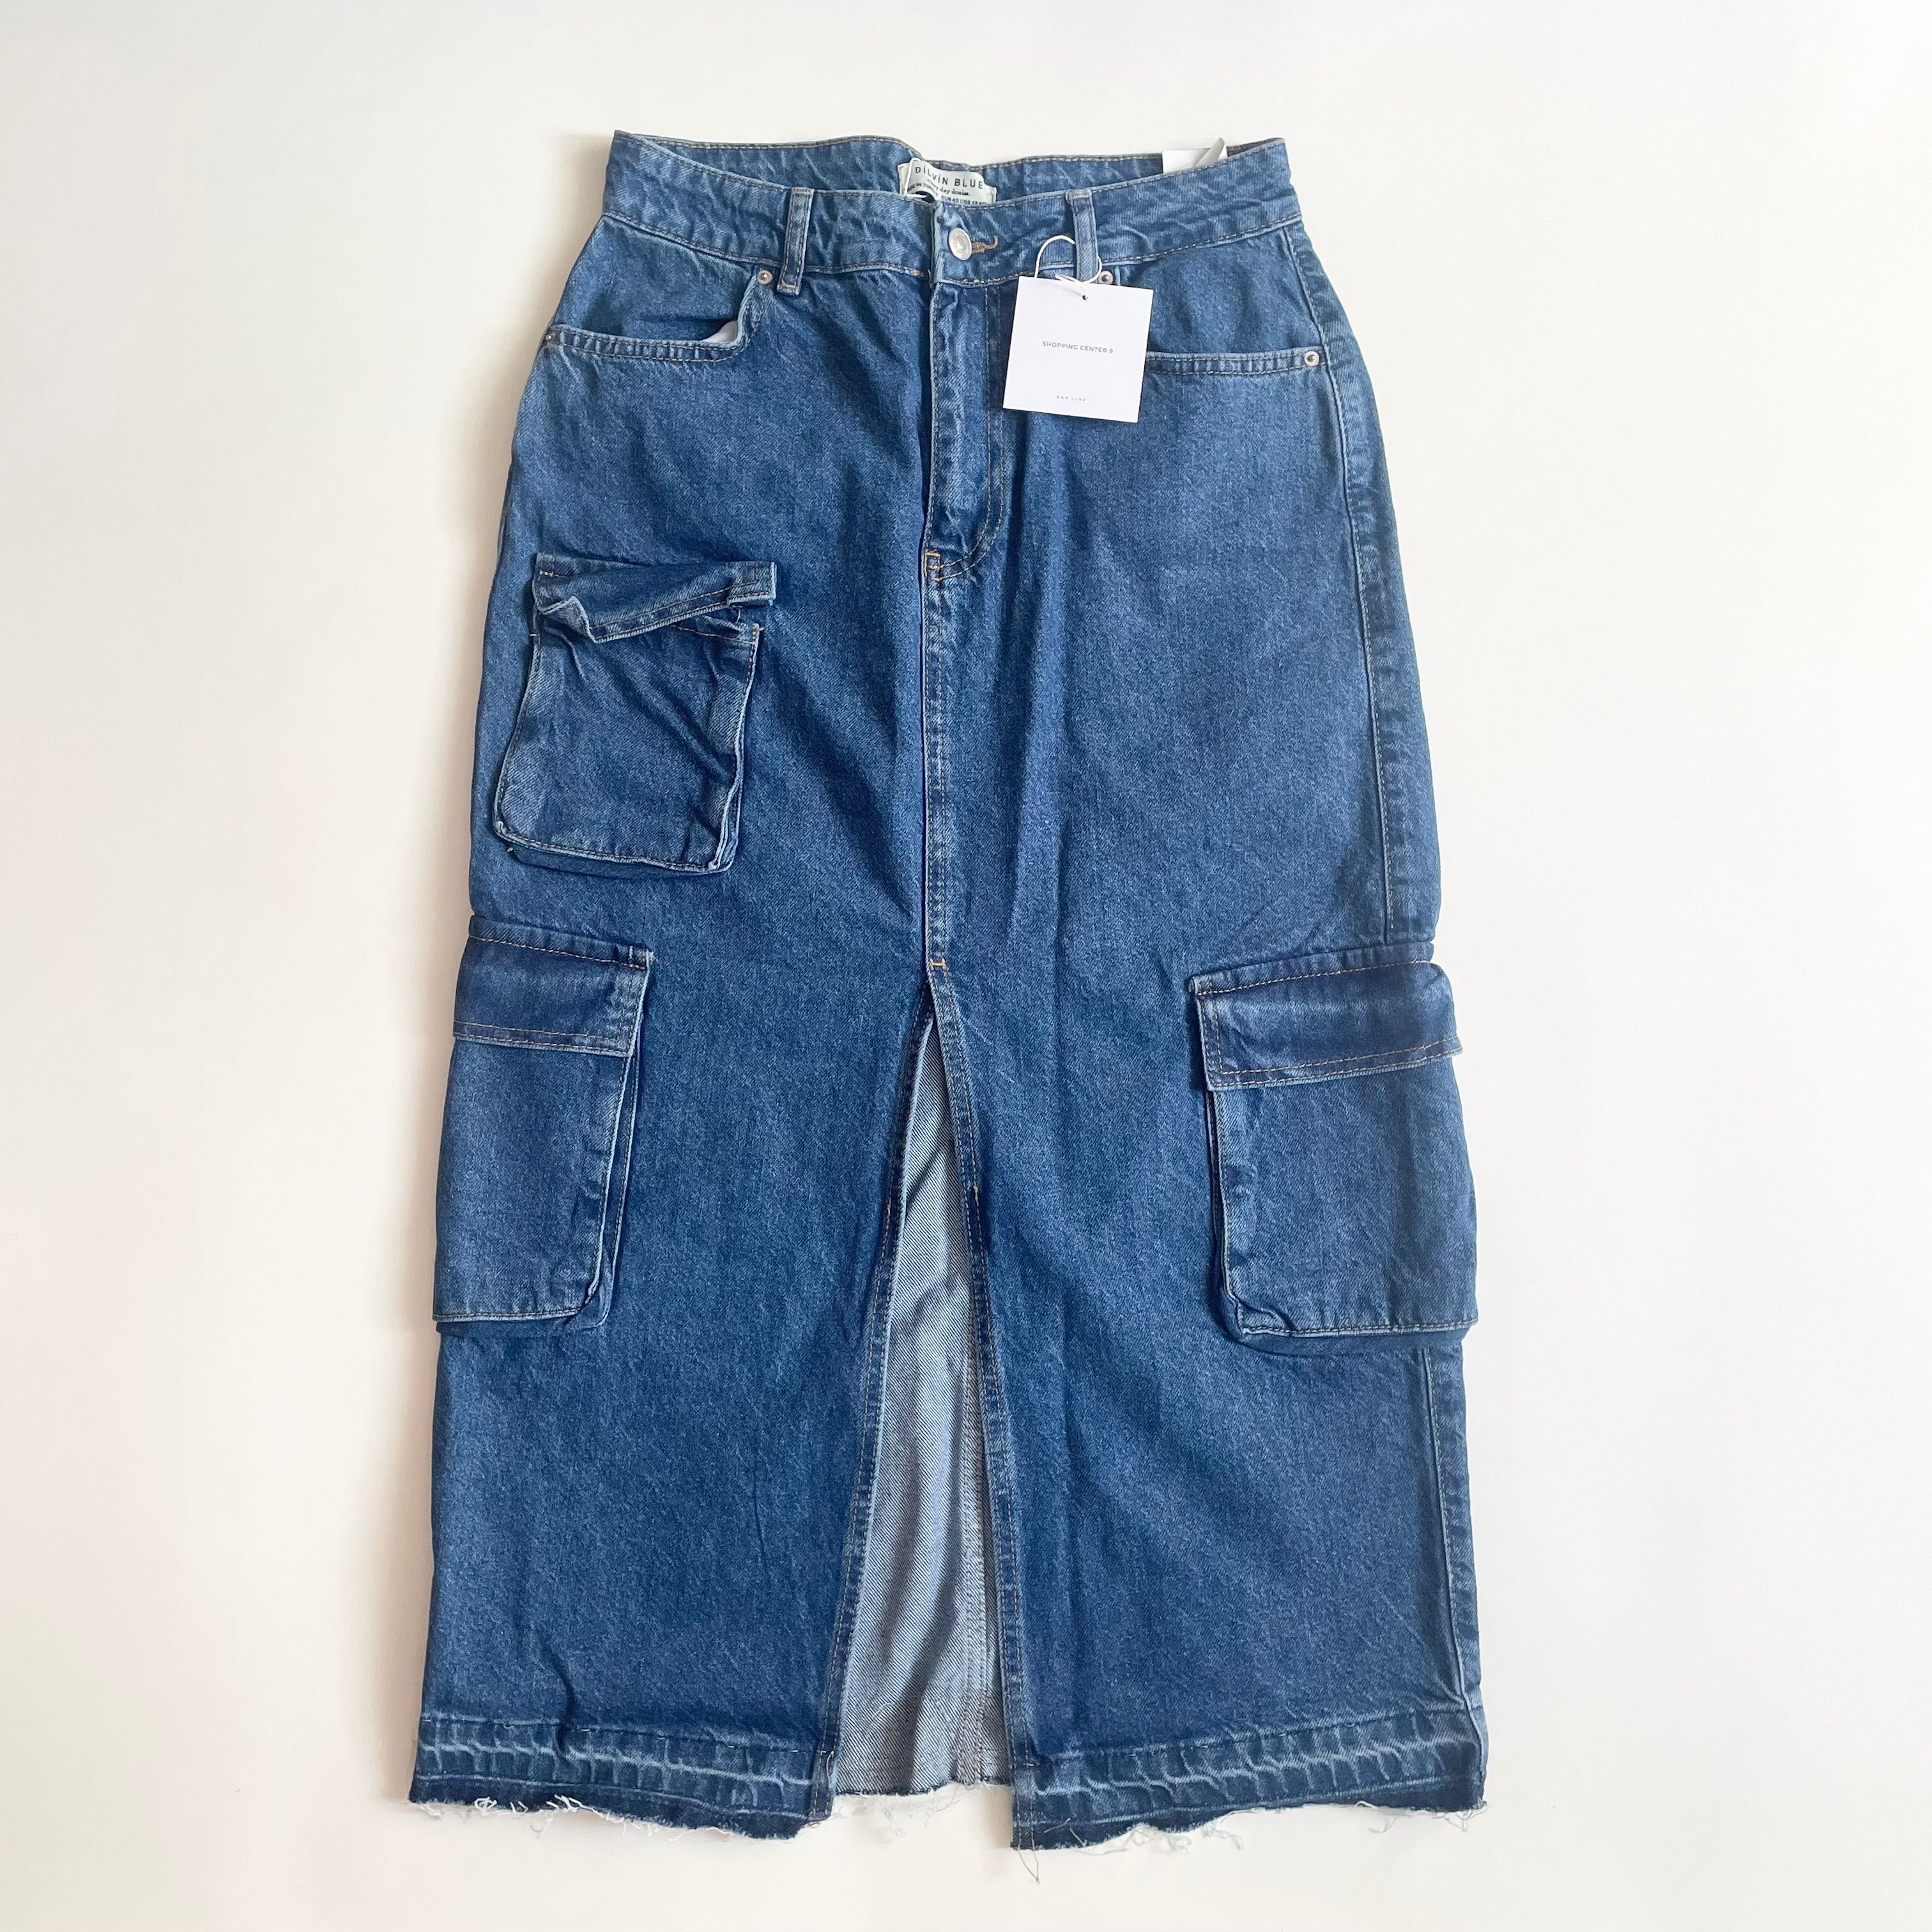 Nowa spódnica jeansowa z kieszeniami Shopping Center 9 L